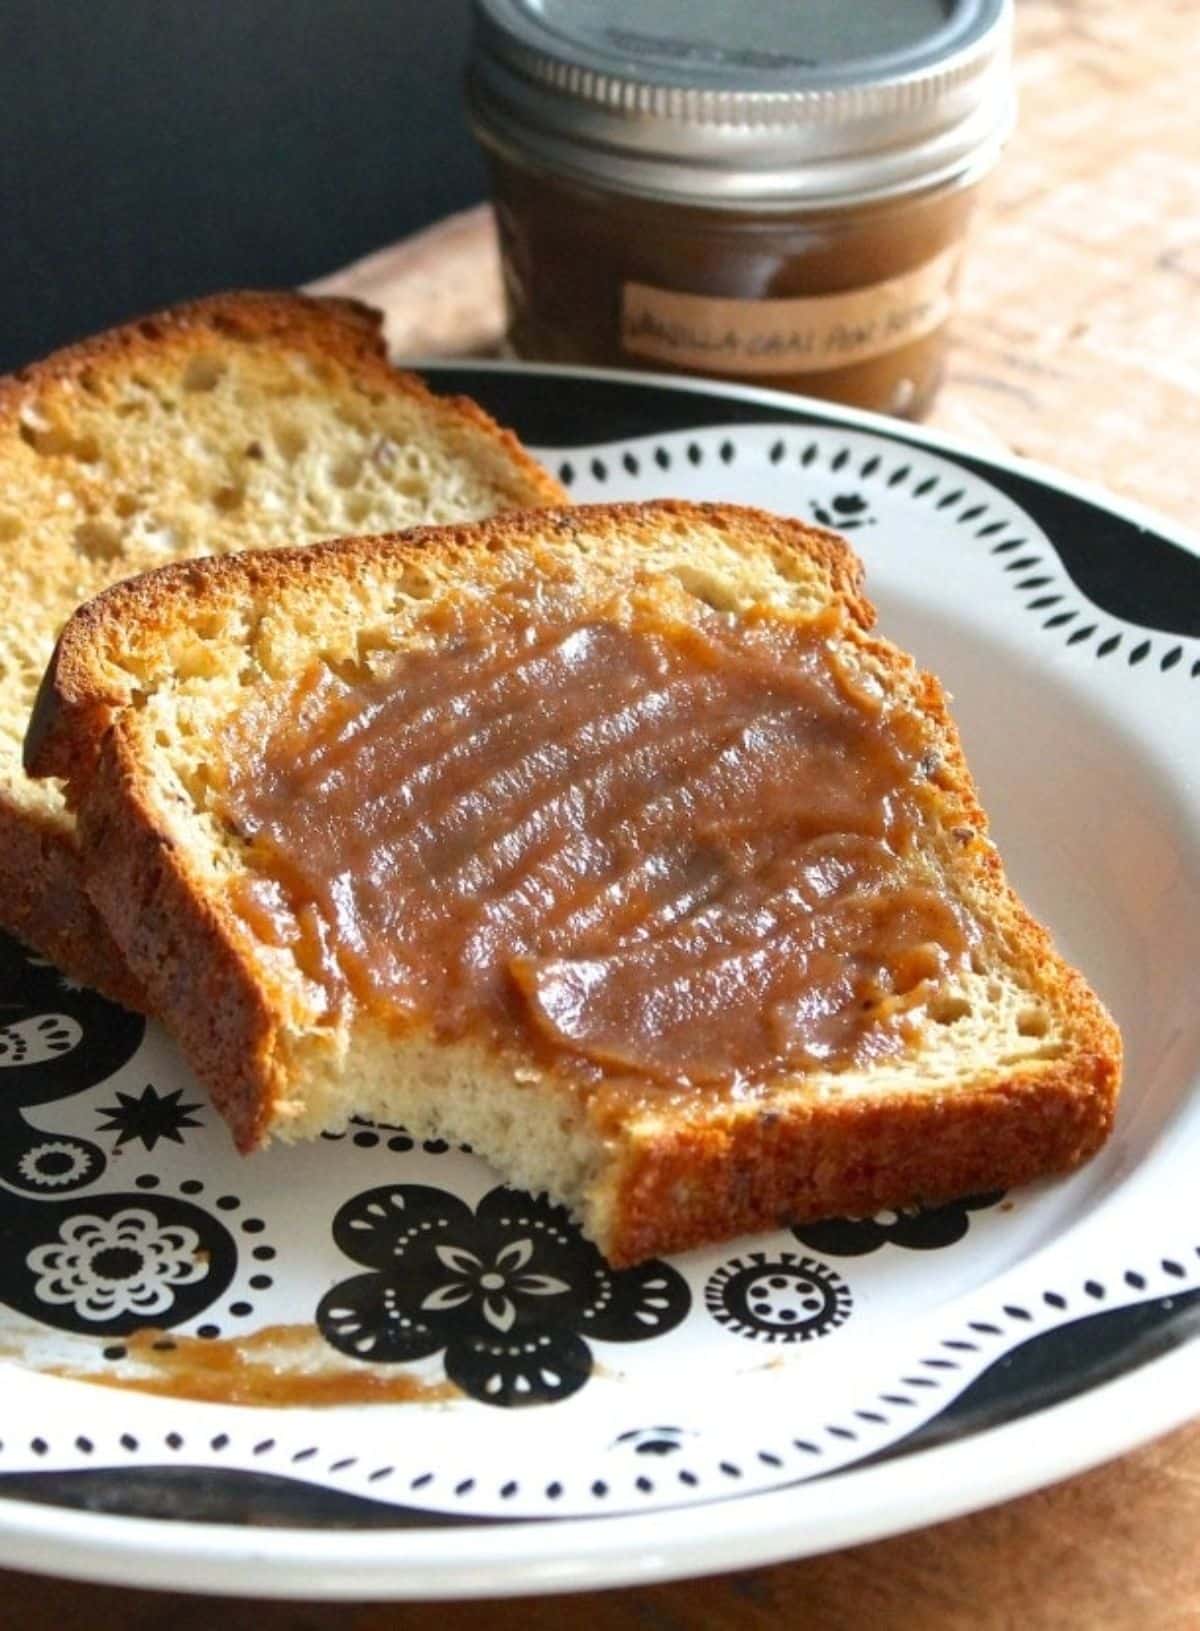 Vanilla chai pear butter on a slice of bread.